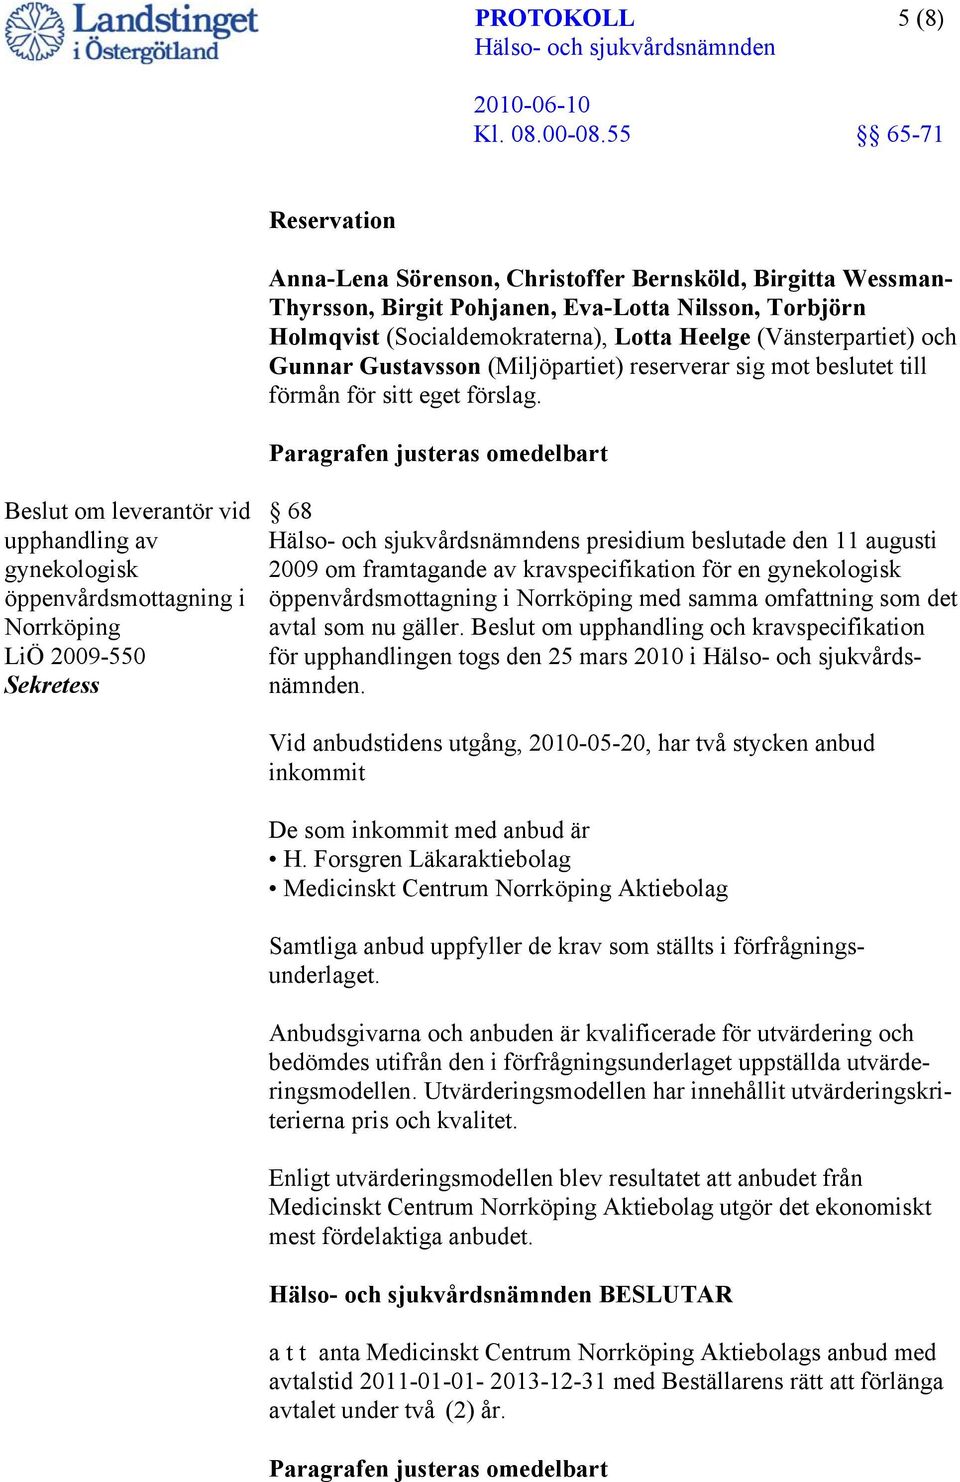 Paragrafen justeras omedelbart Beslut om leverantör vid upphandling av gynekologisk öppenvårdsmottagning i Norrköping LiÖ 2009-550 Sekretess 68 s presidium beslutade den 11 augusti 2009 om